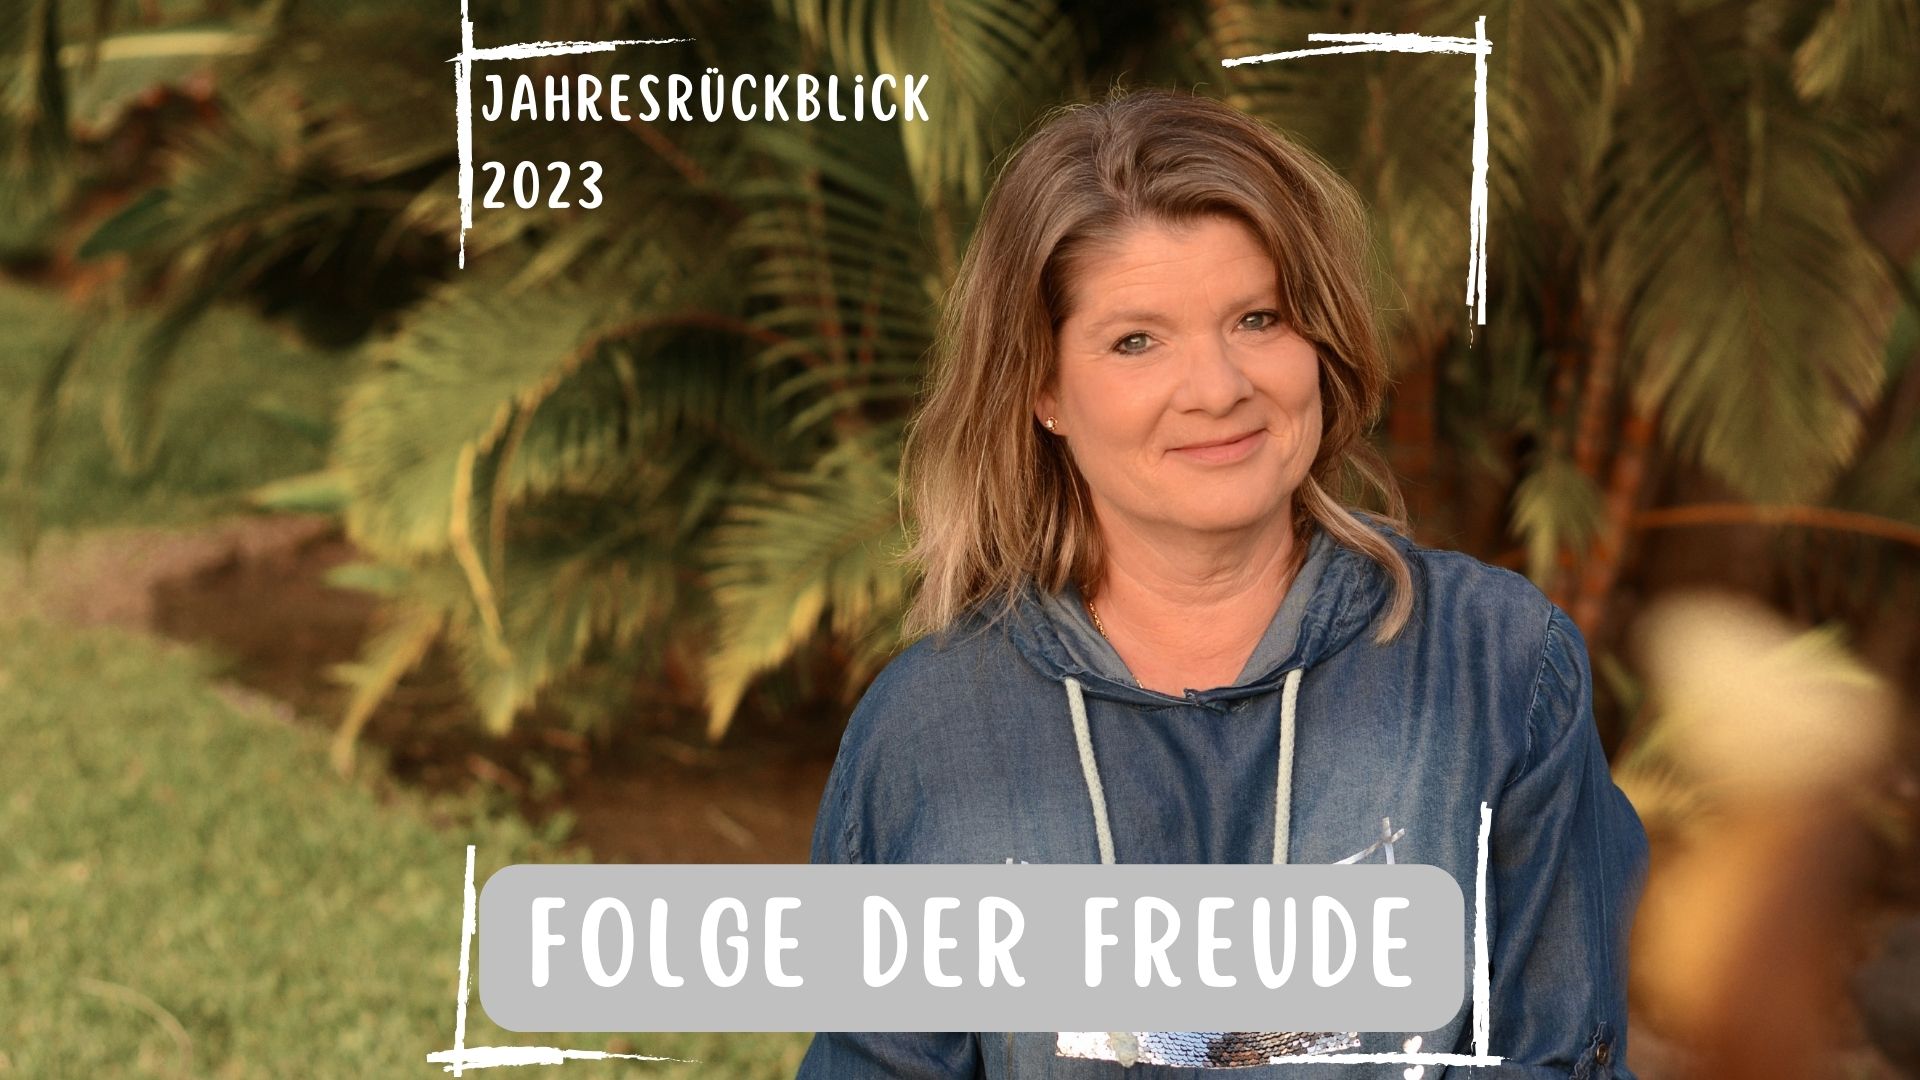 You are currently viewing Jahresrückblick 2023: Folge der Freude